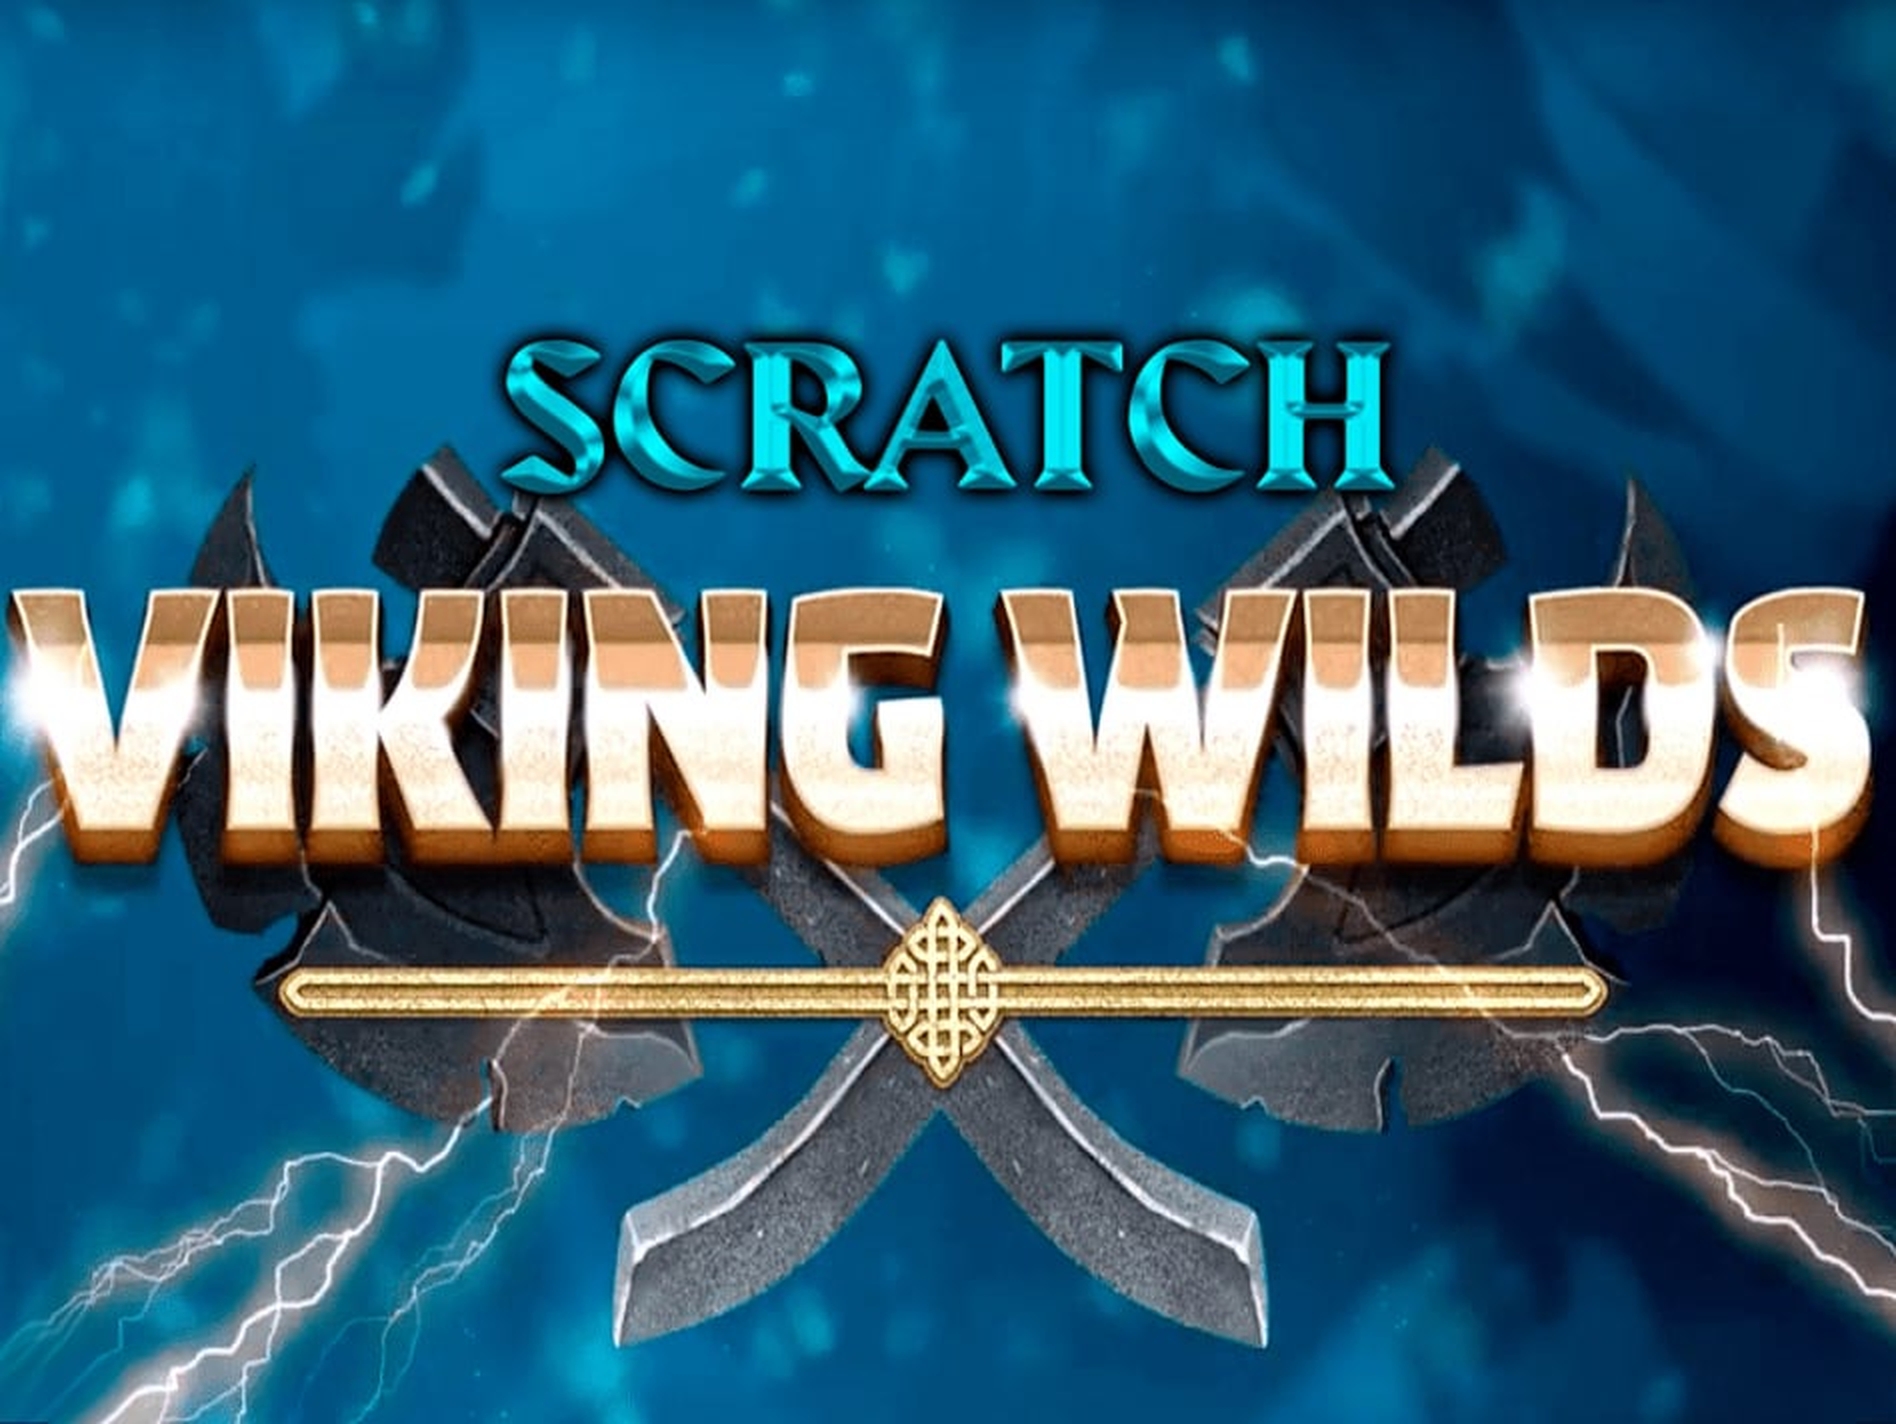 Viking Wilds Scratch demo